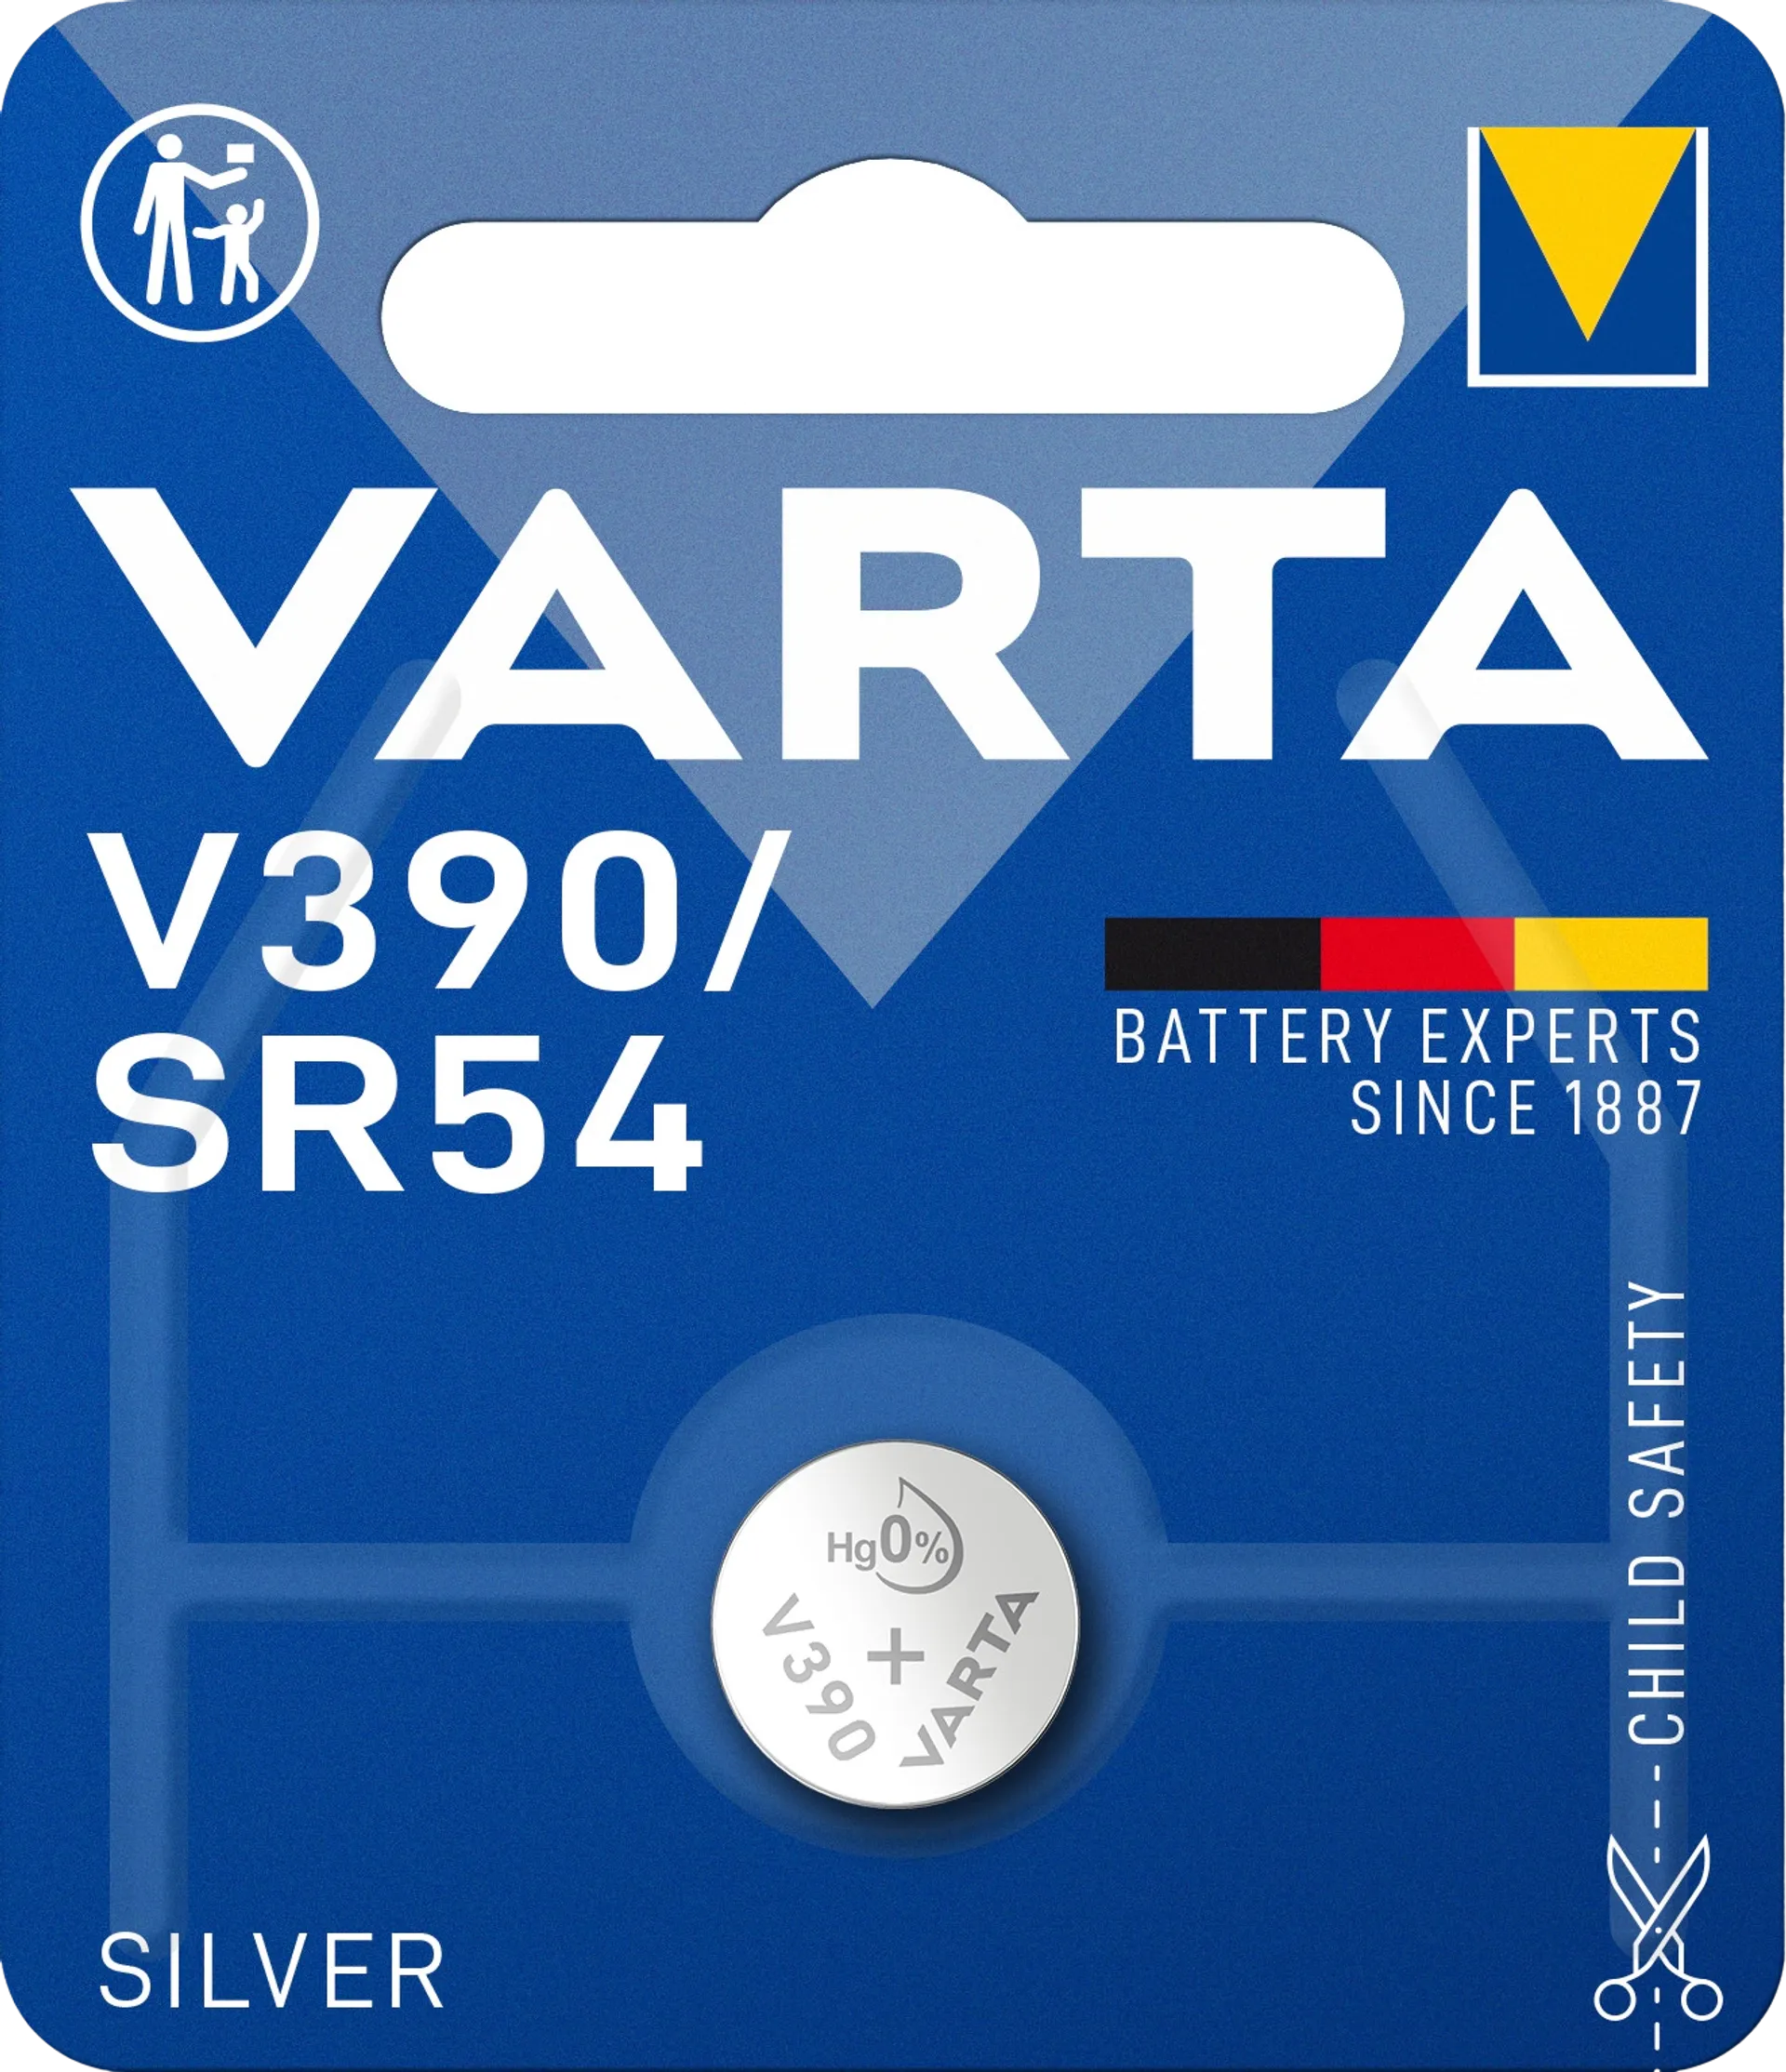 VARTA SILVER Coin V390/SR54 1kpl - 1